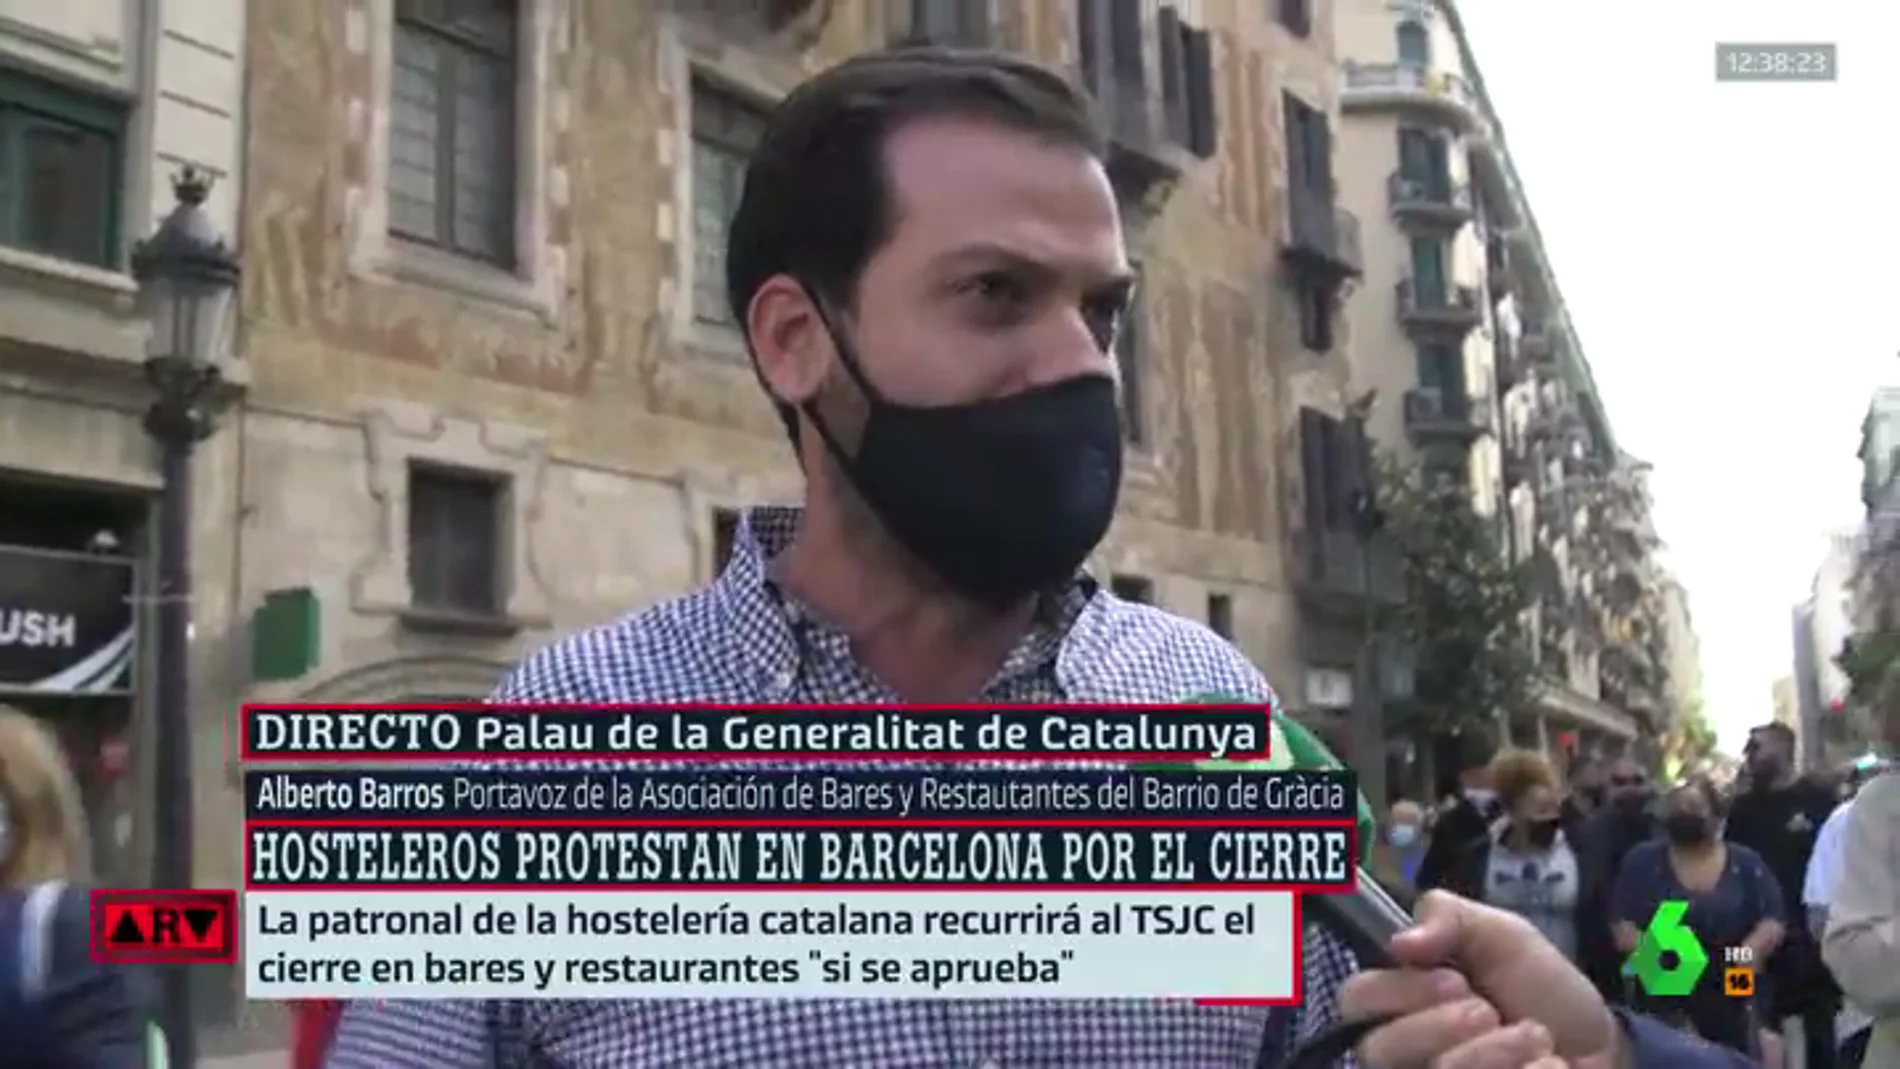 Los hosteleros cortan Via Laietana en protesta por las restricciones en Cataluña: "Nos abocan al cierre"